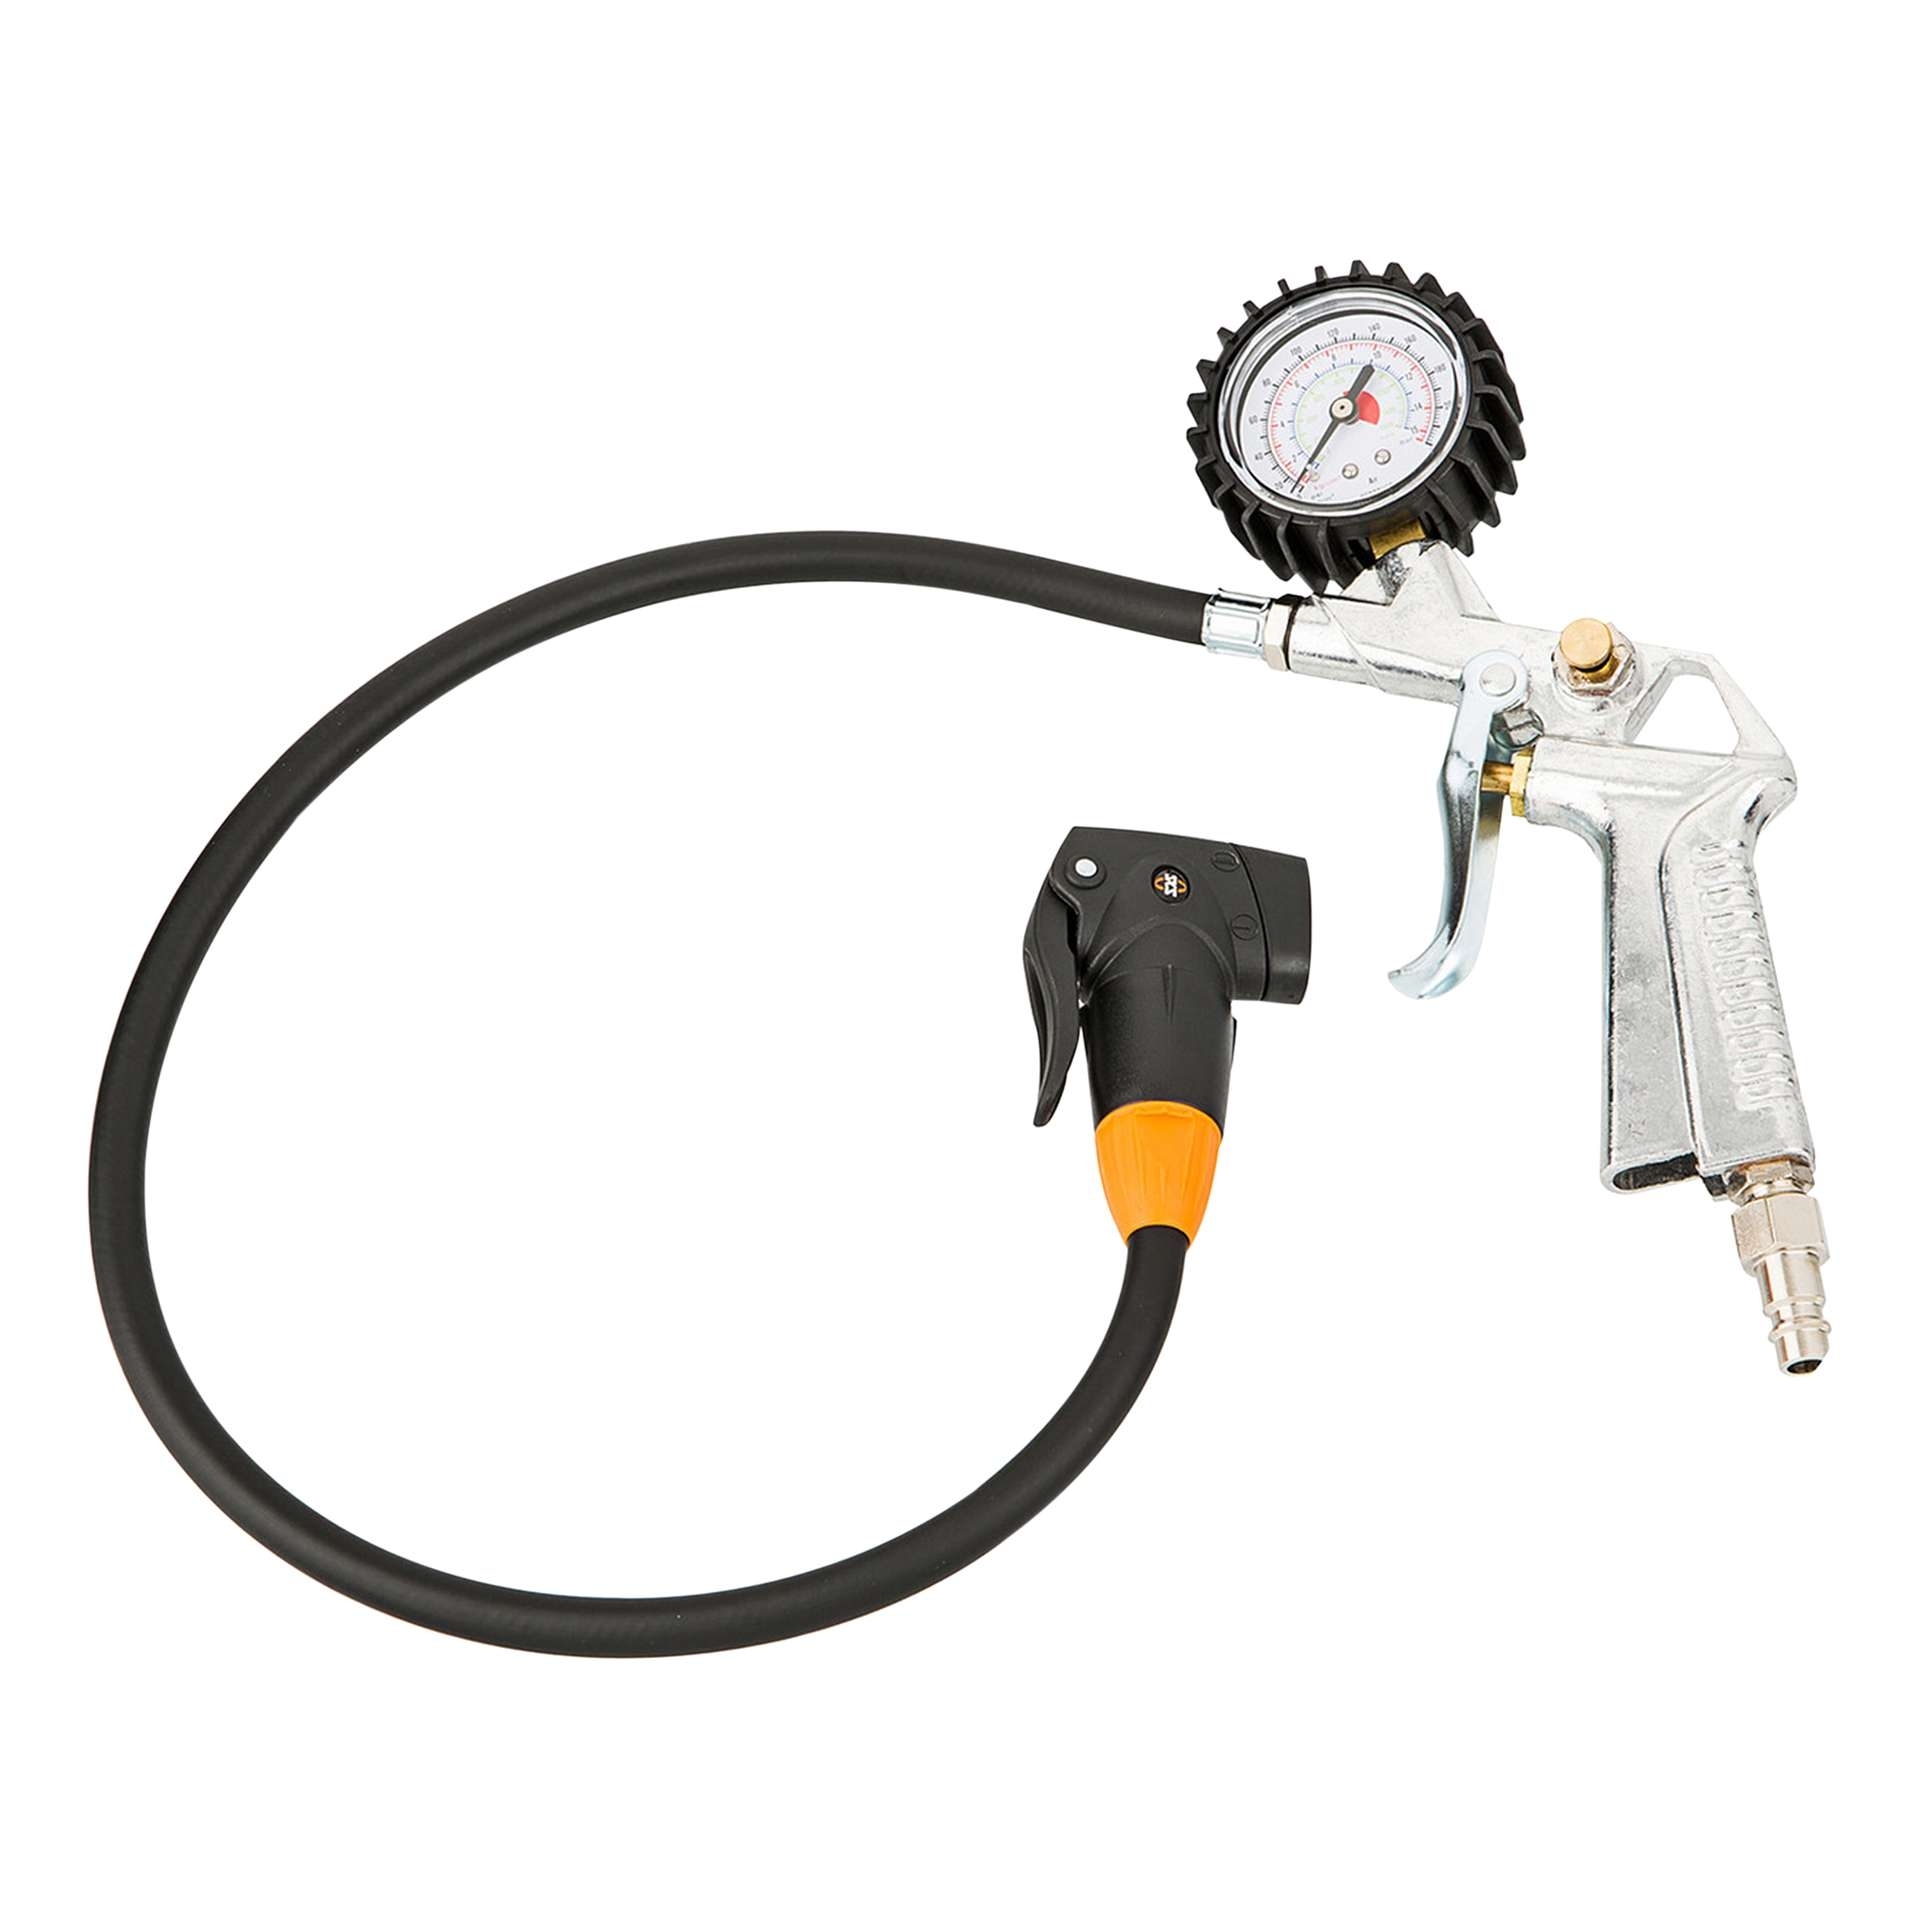 Gonfleur compresseur avec manomètre Cyclus valve Presta / Schrader -  Outillage et entretien sur La Bécanerie